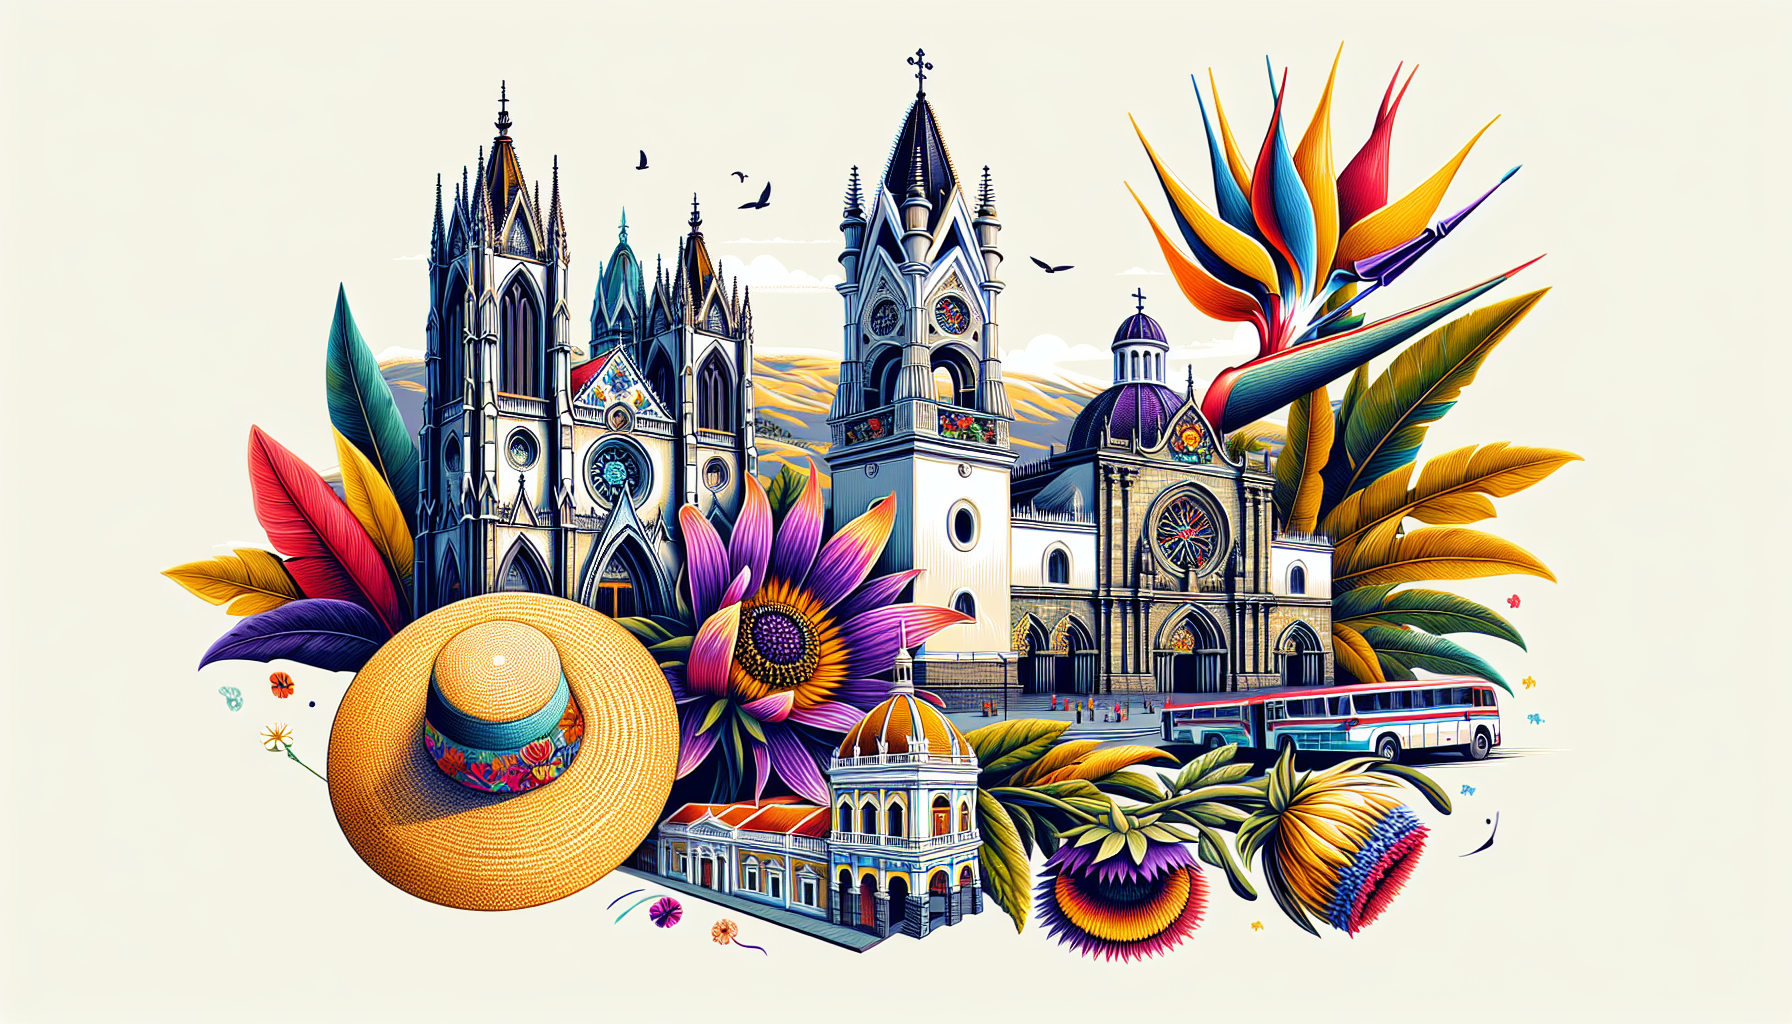 Create a picturesque scene illustrating the most iconic churches of Ecuador, featuring the neo-Gothic Basílica del Voto Nacional in Quito, the ornate La Compañía de Jesús, and the historic Cathedral o